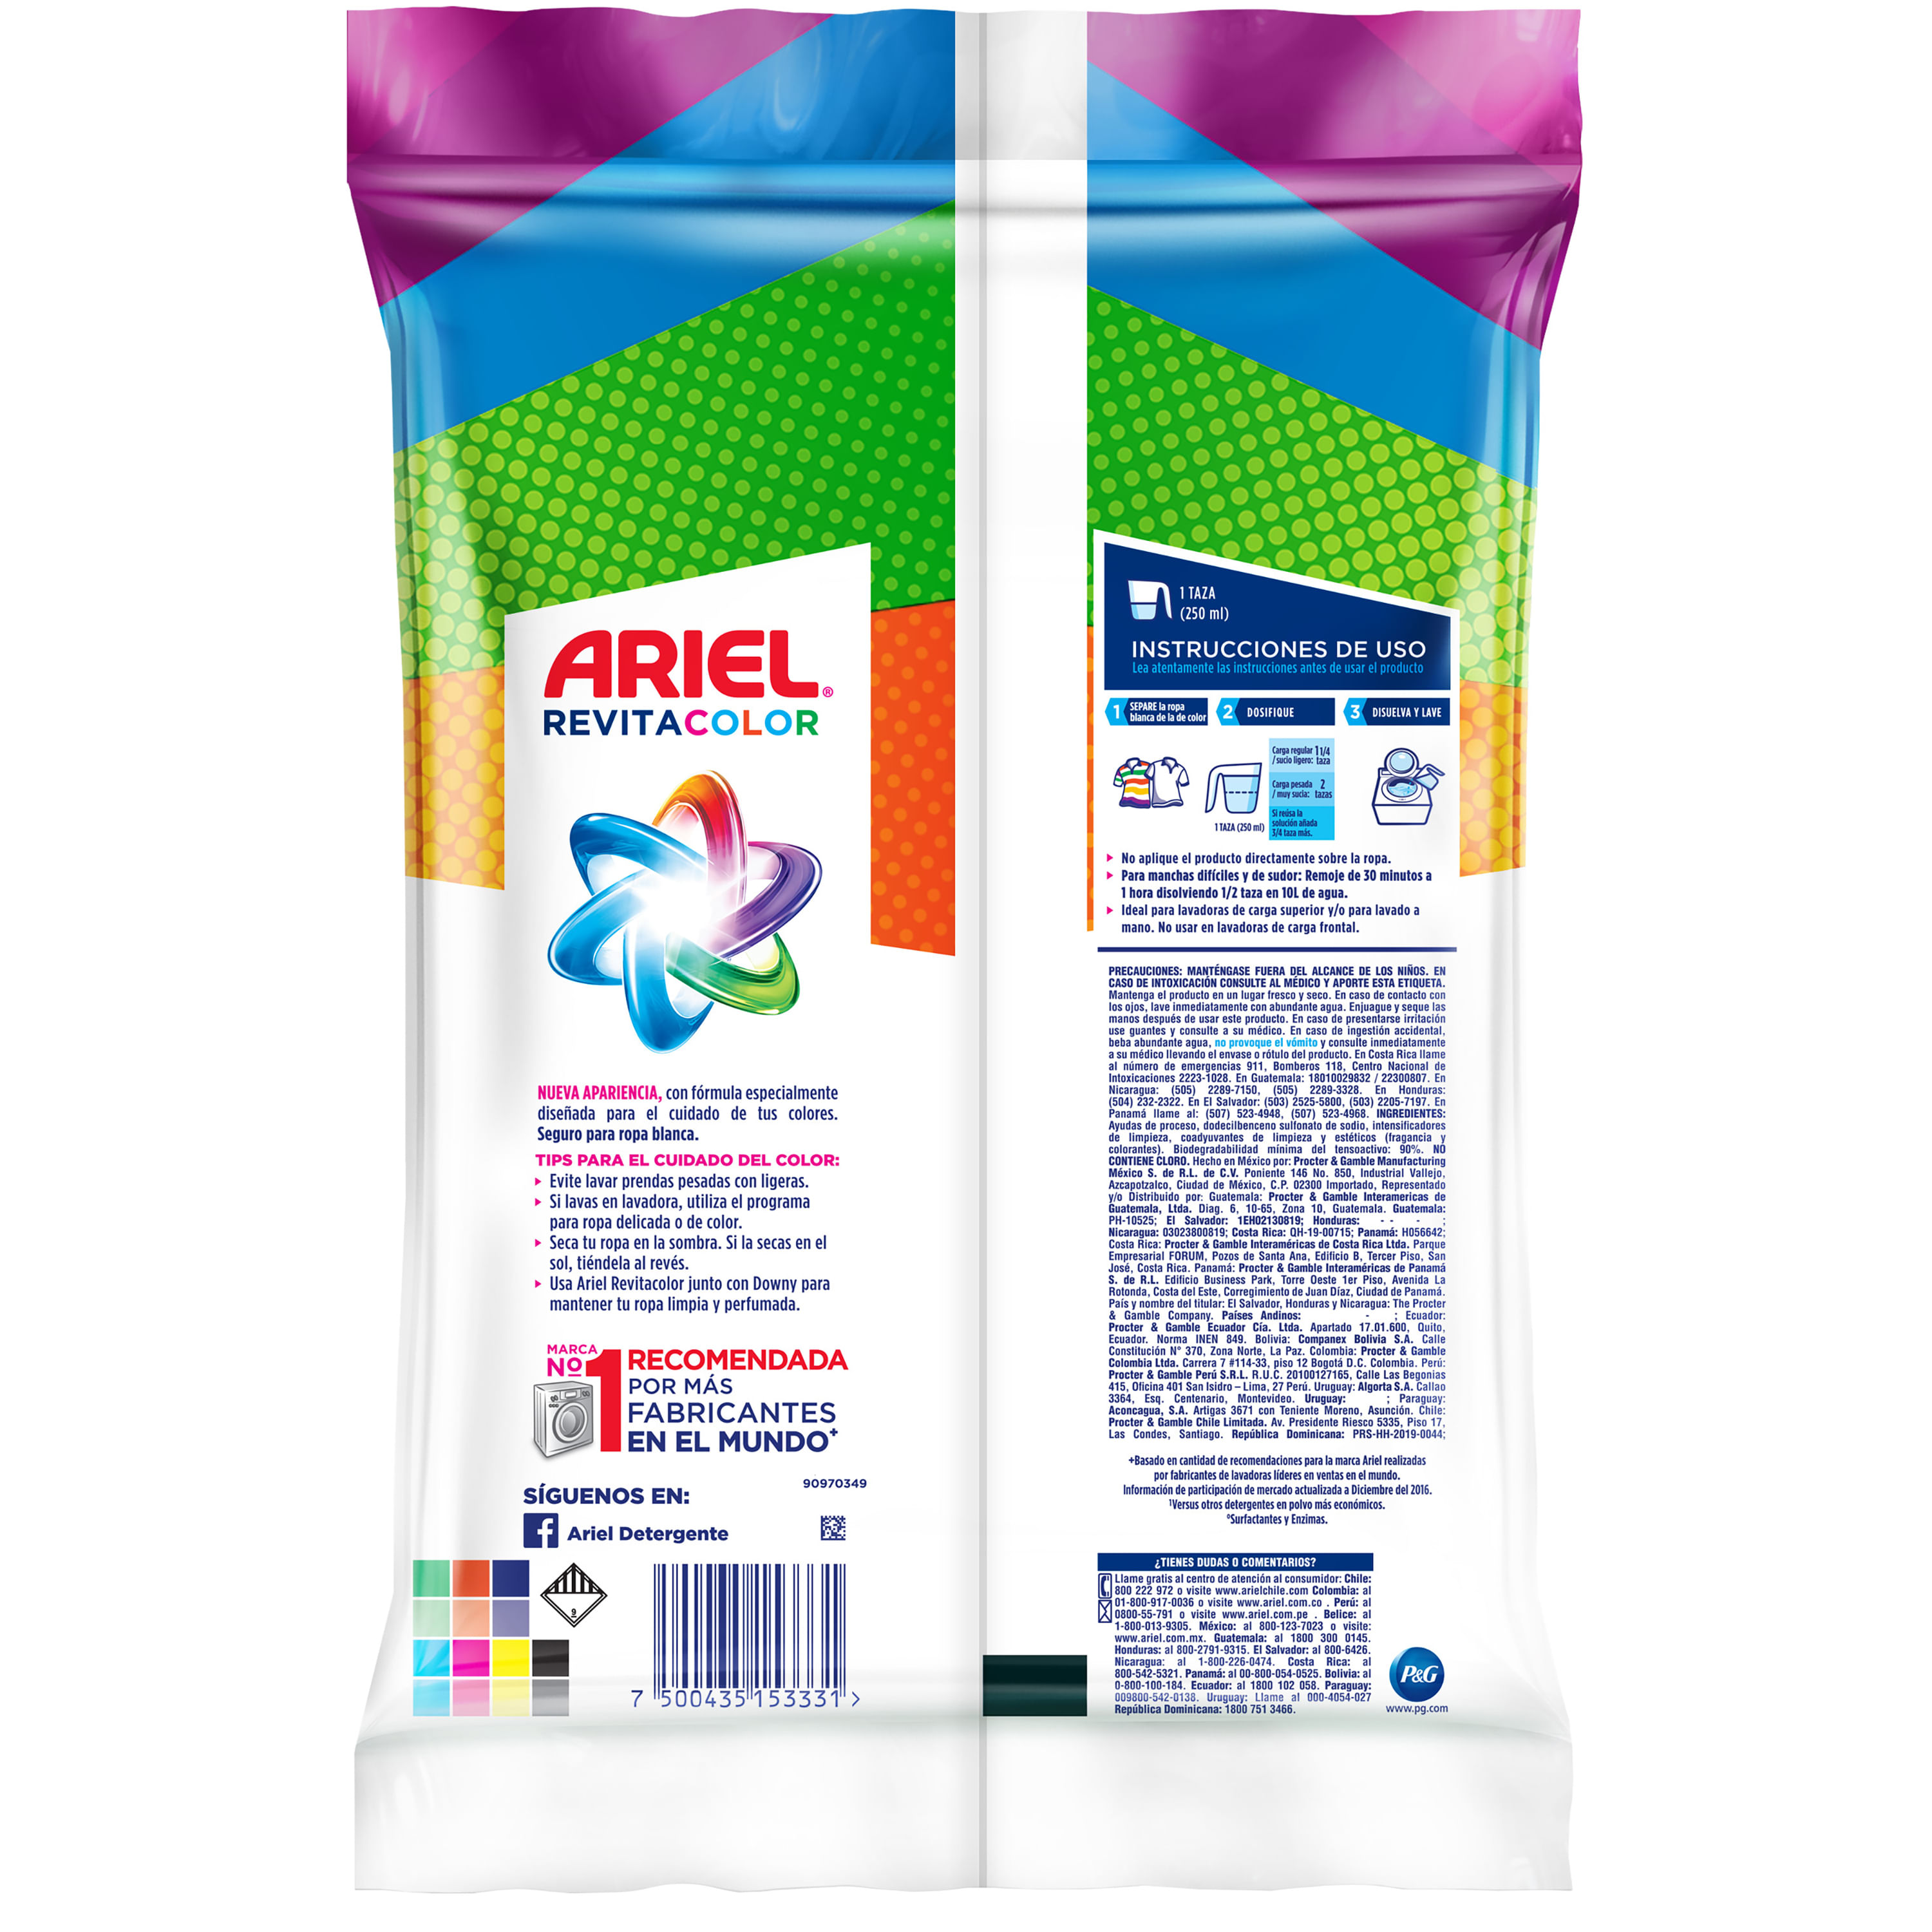 Comprar Detergente En Polvo Ariel Revitacolor - 800Gr